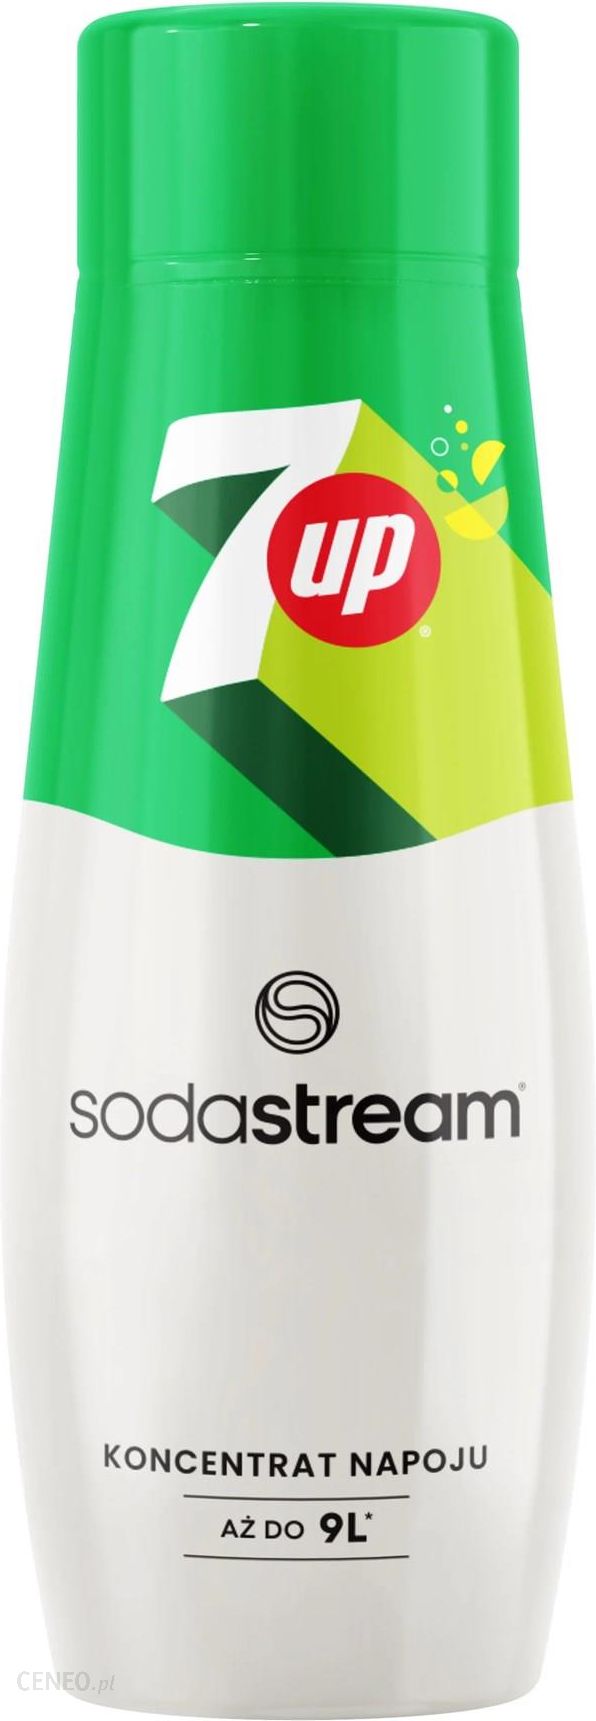 Sodastream - SODASTREAM Concentré 7UP 440ml Lot de 6 - Machine à